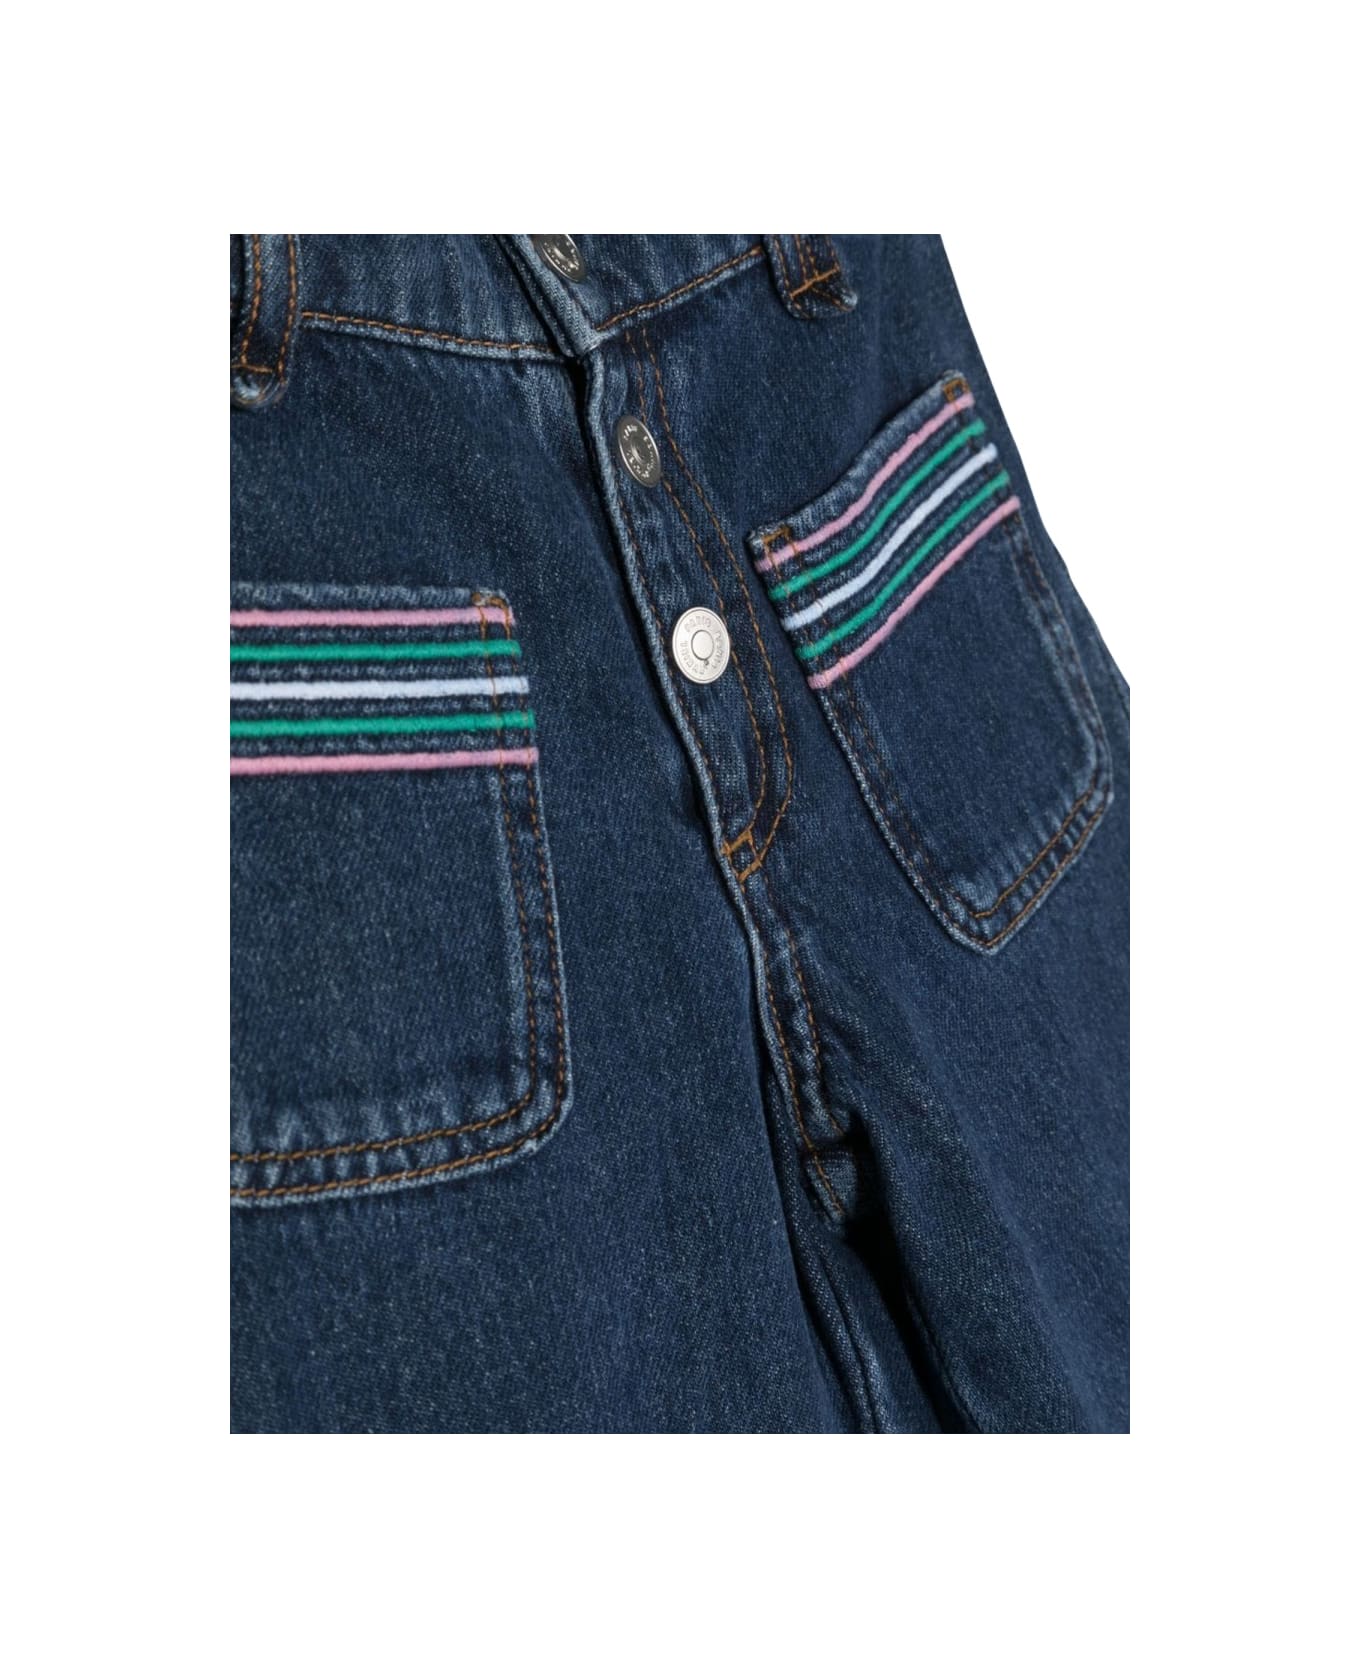 Sonia Rykiel Jeans With Pockets - DENIM